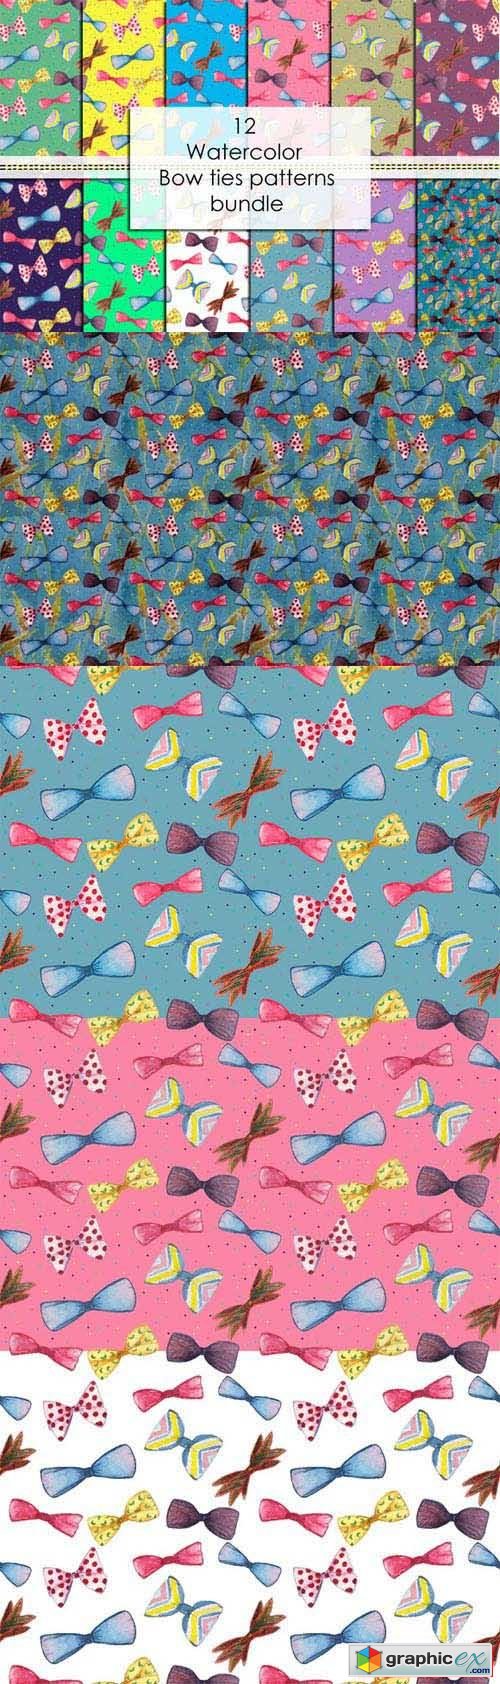 12 bow ties patterns bundle